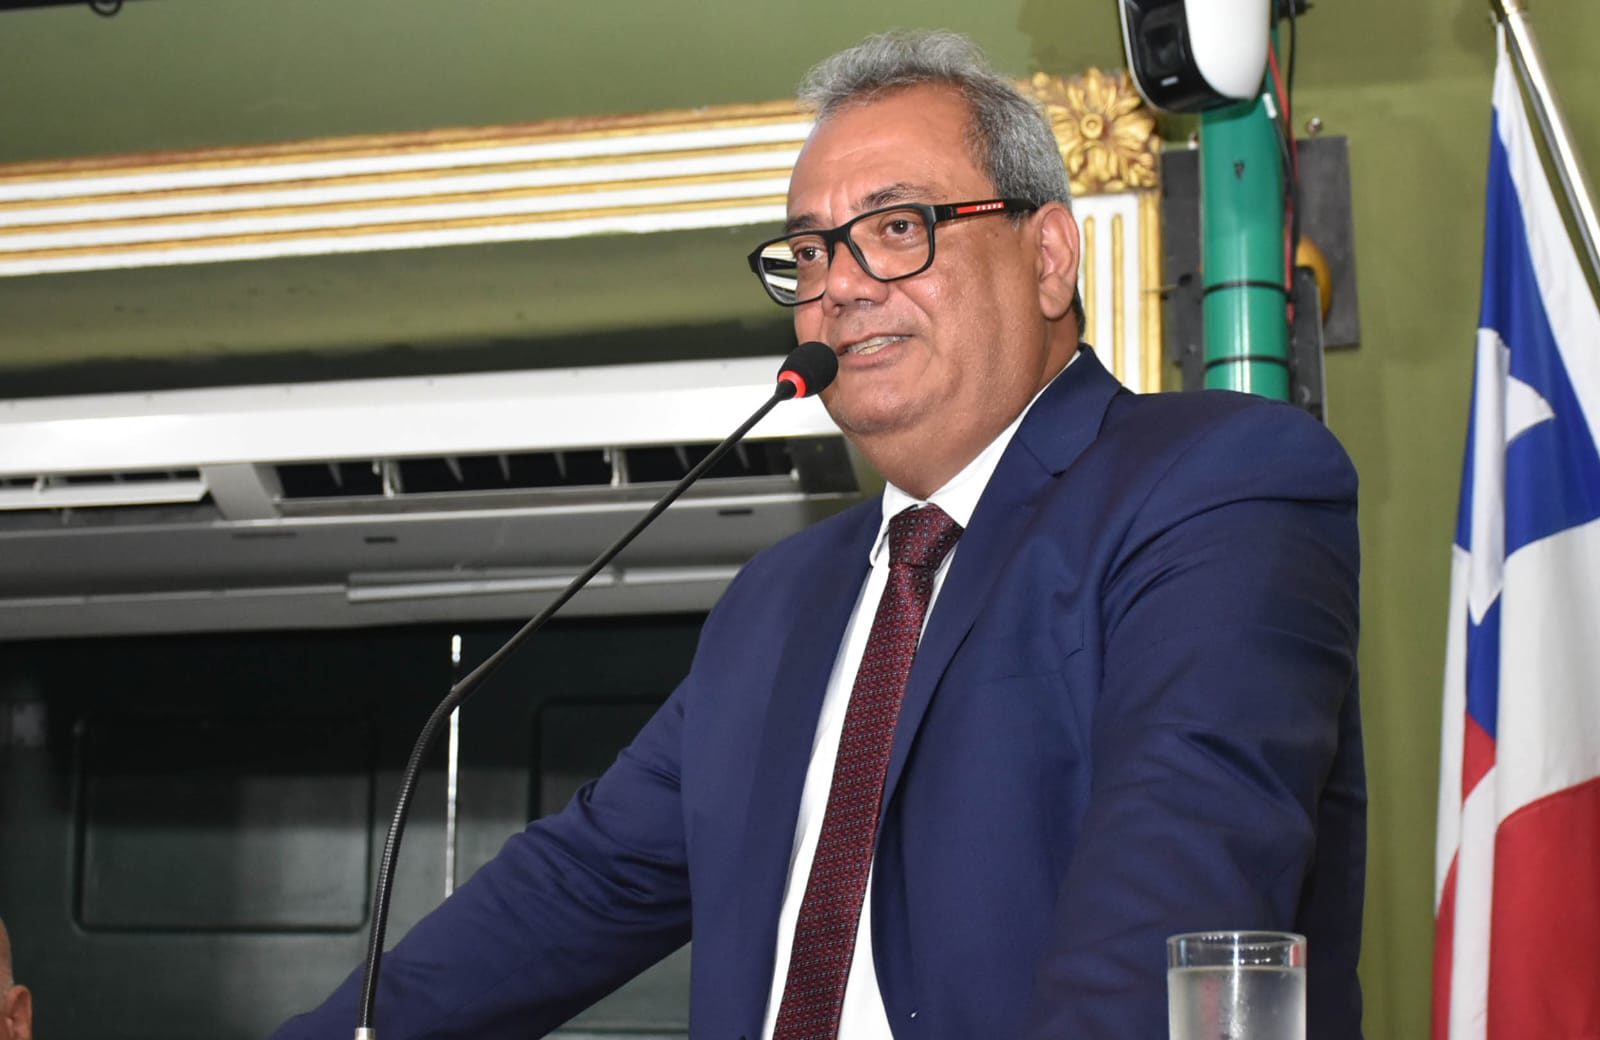 “Câmara de Salvador retorna trabalhos no plenário no próximo dia 2”, diz Carlos Muniz